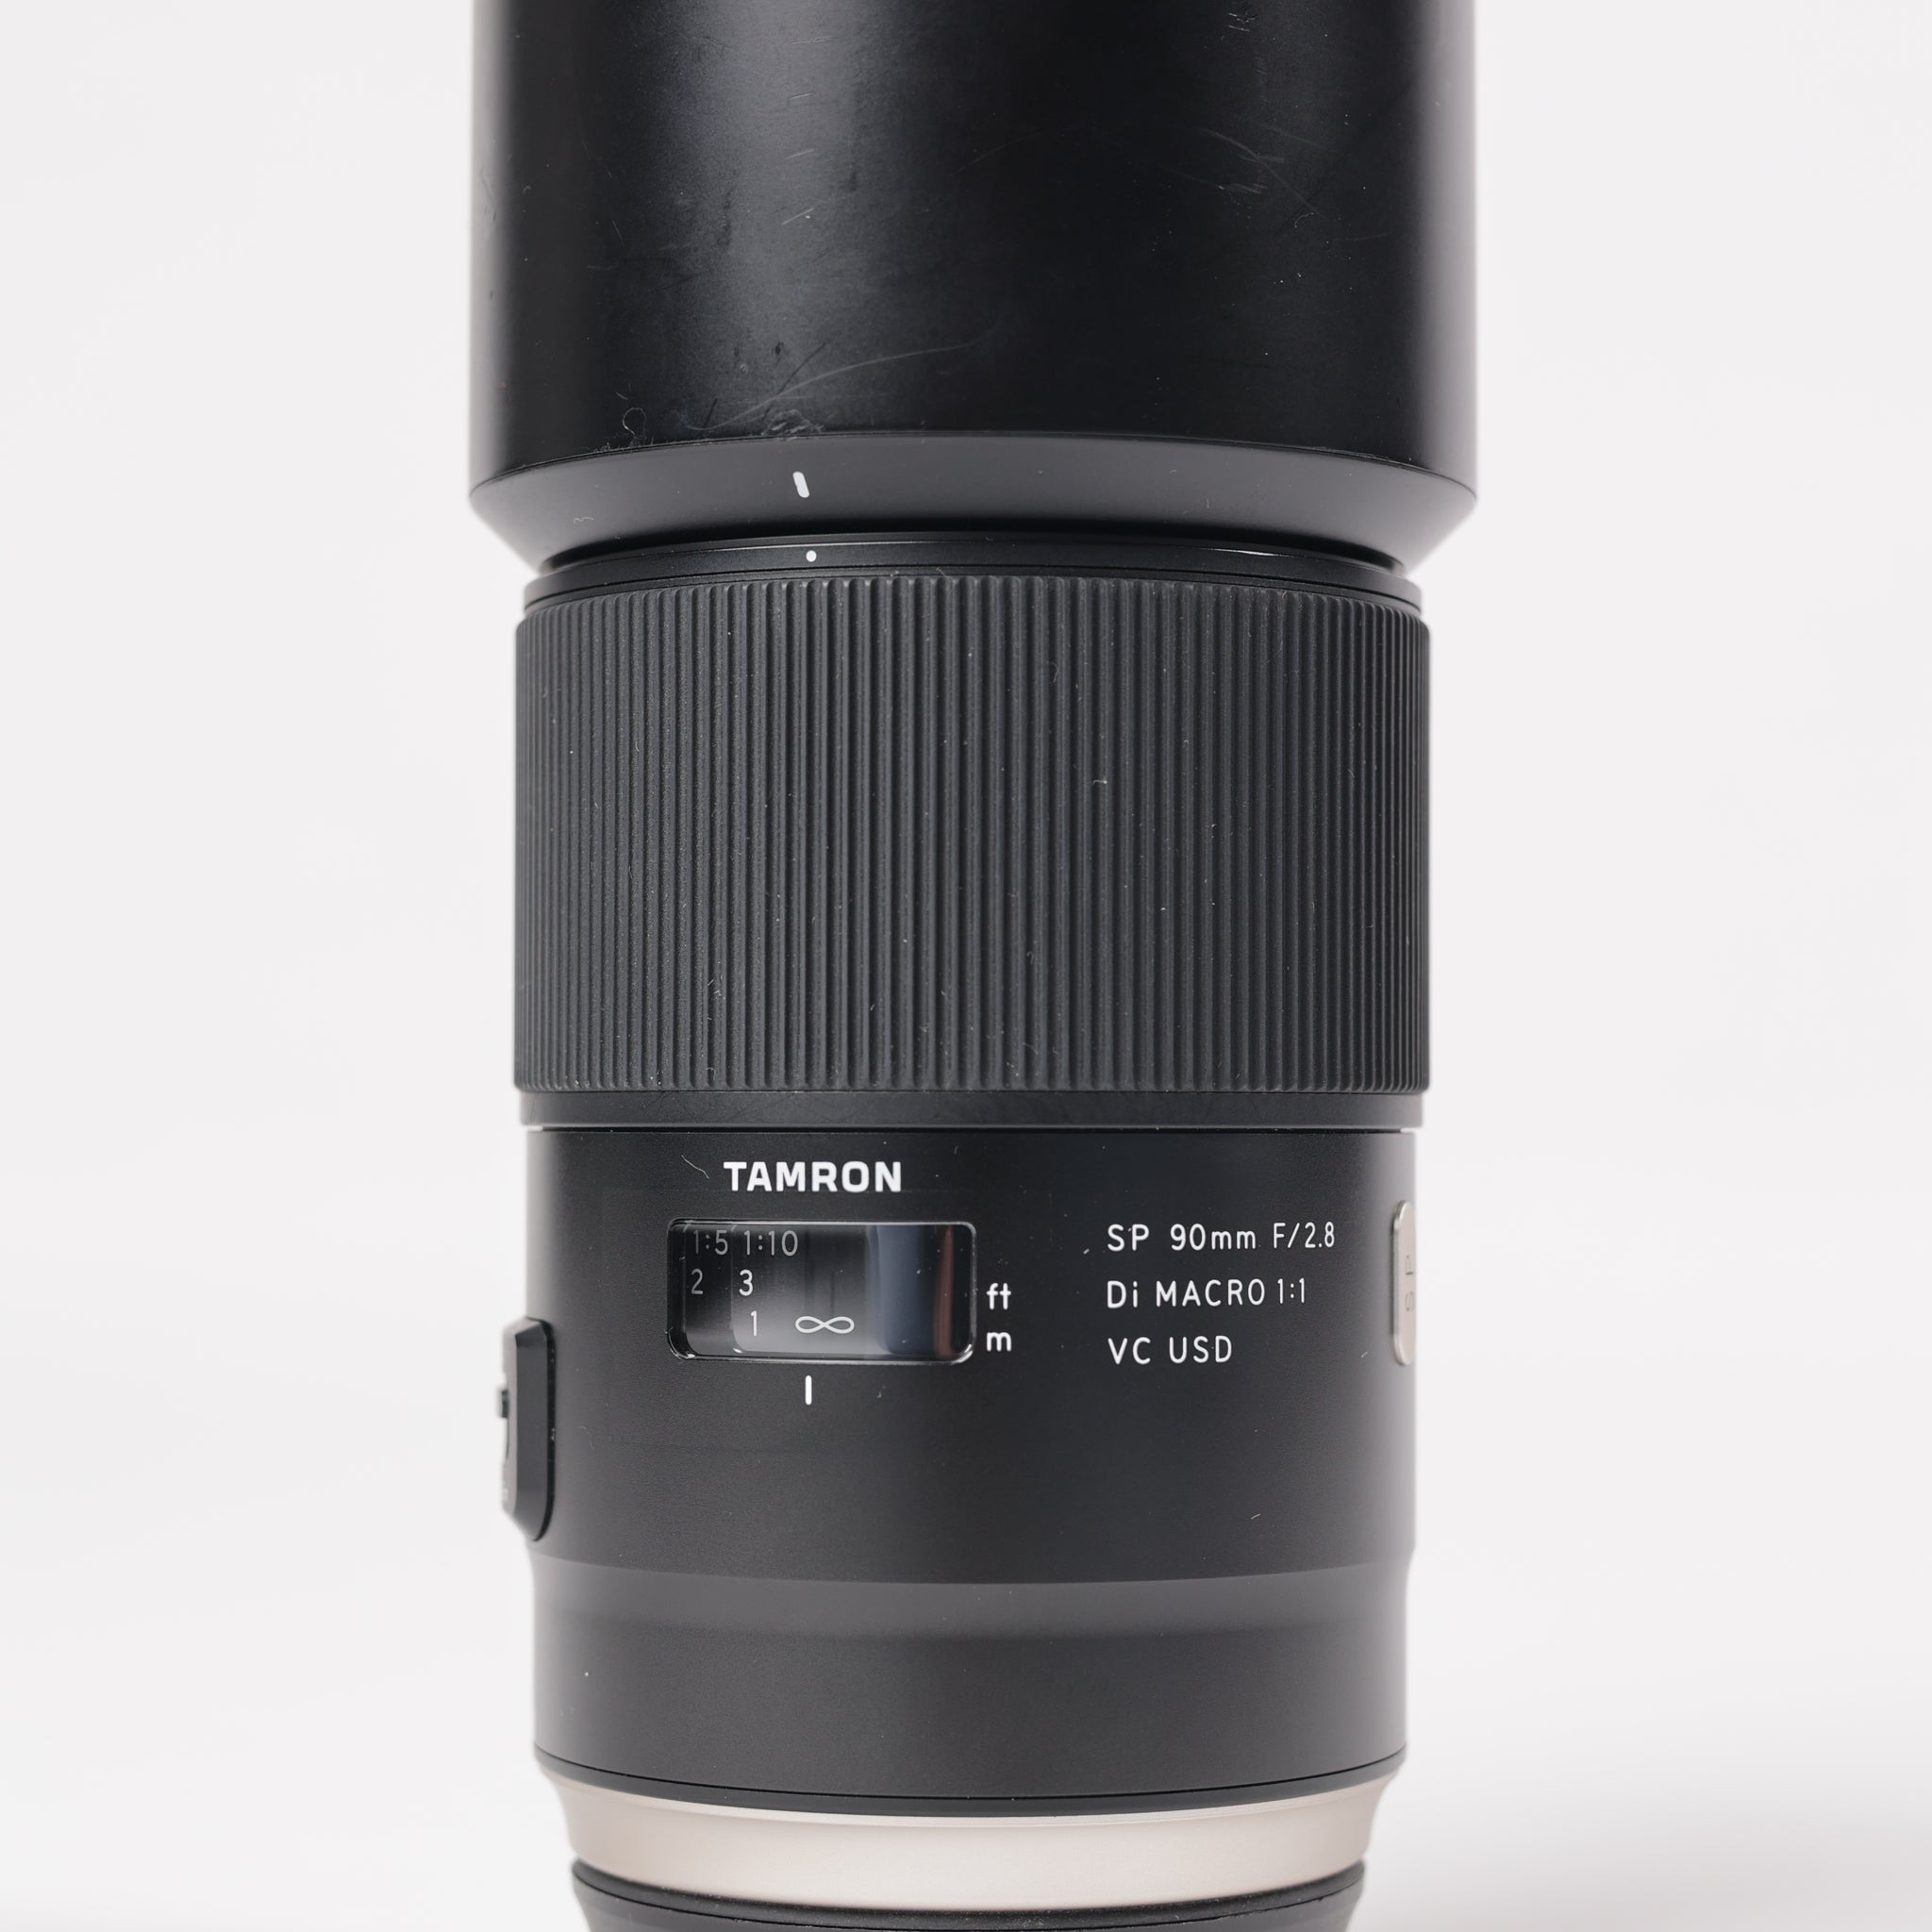 Tamron 90/2.8C/10223 SP 90mm f/2.8 Di Macro 1:1 VC USD F/Canon, Used